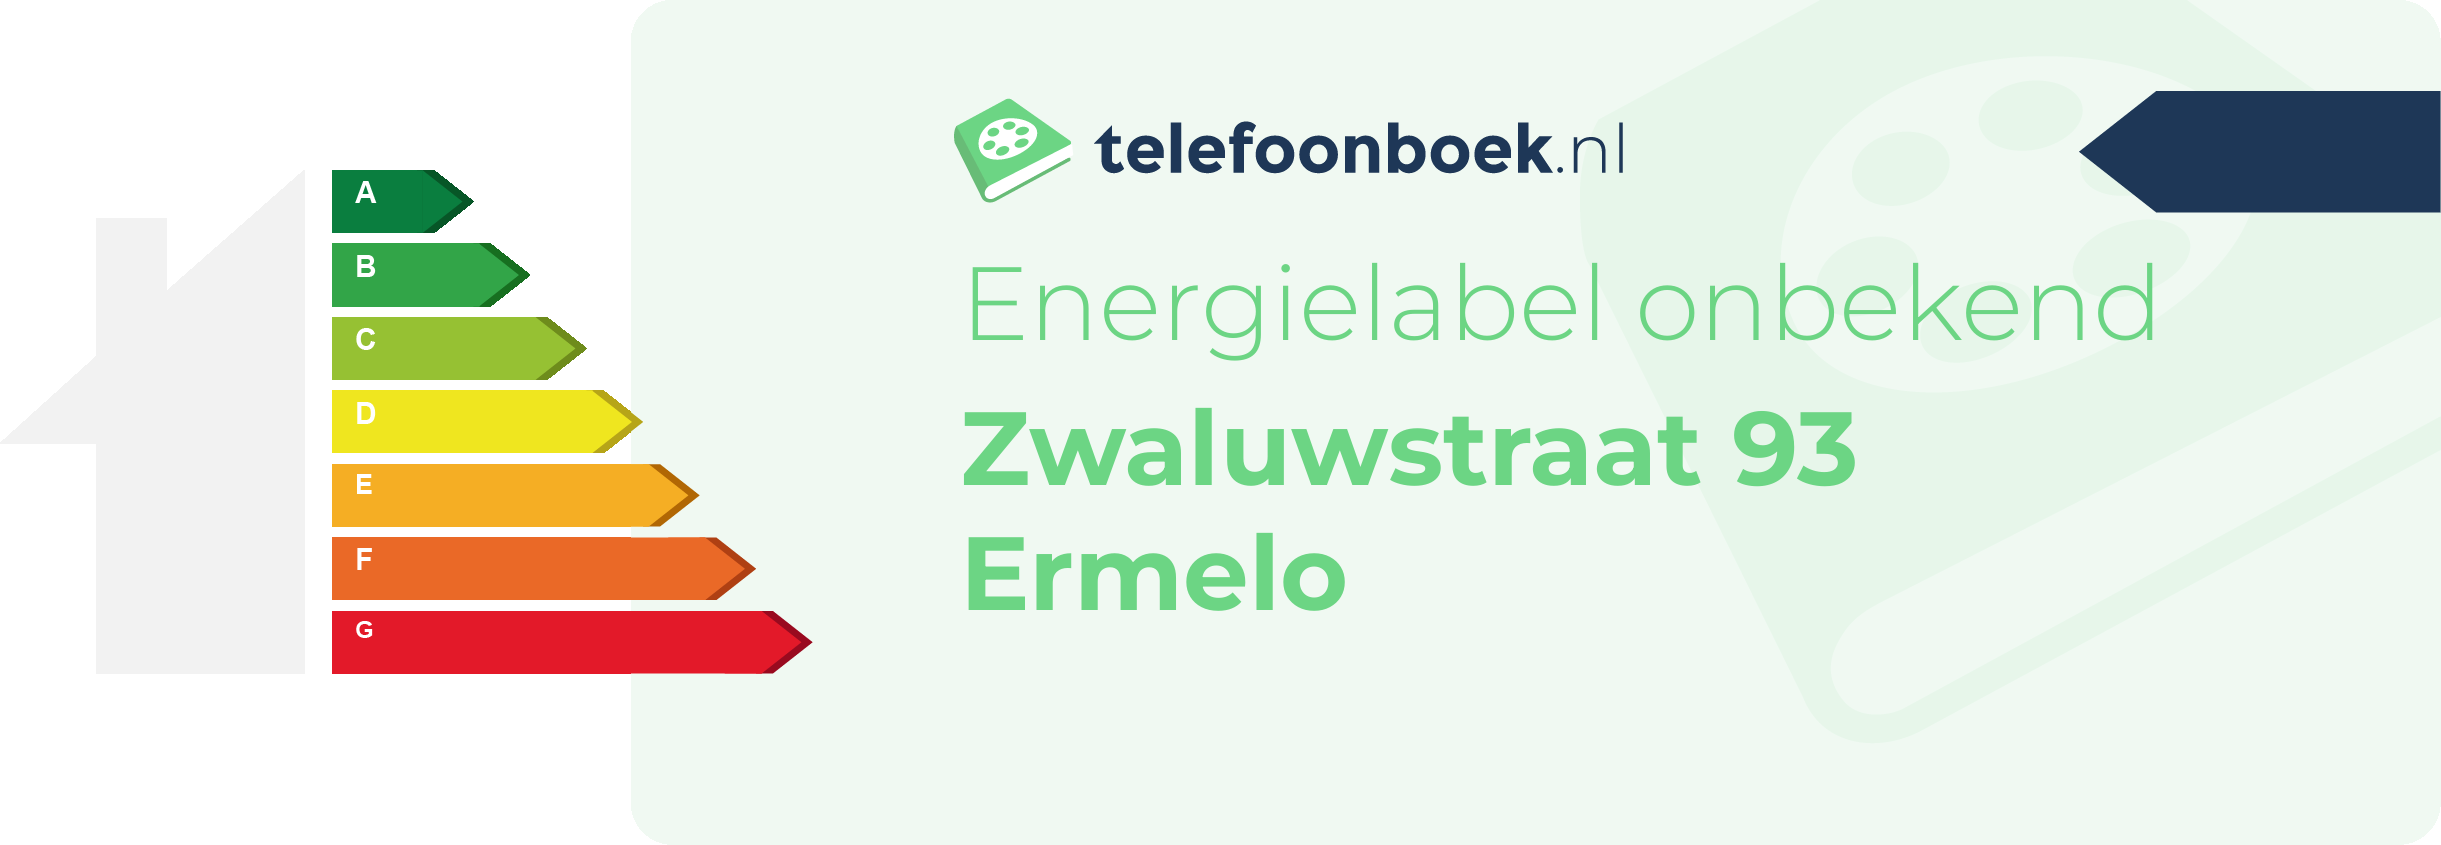 Energielabel Zwaluwstraat 93 Ermelo